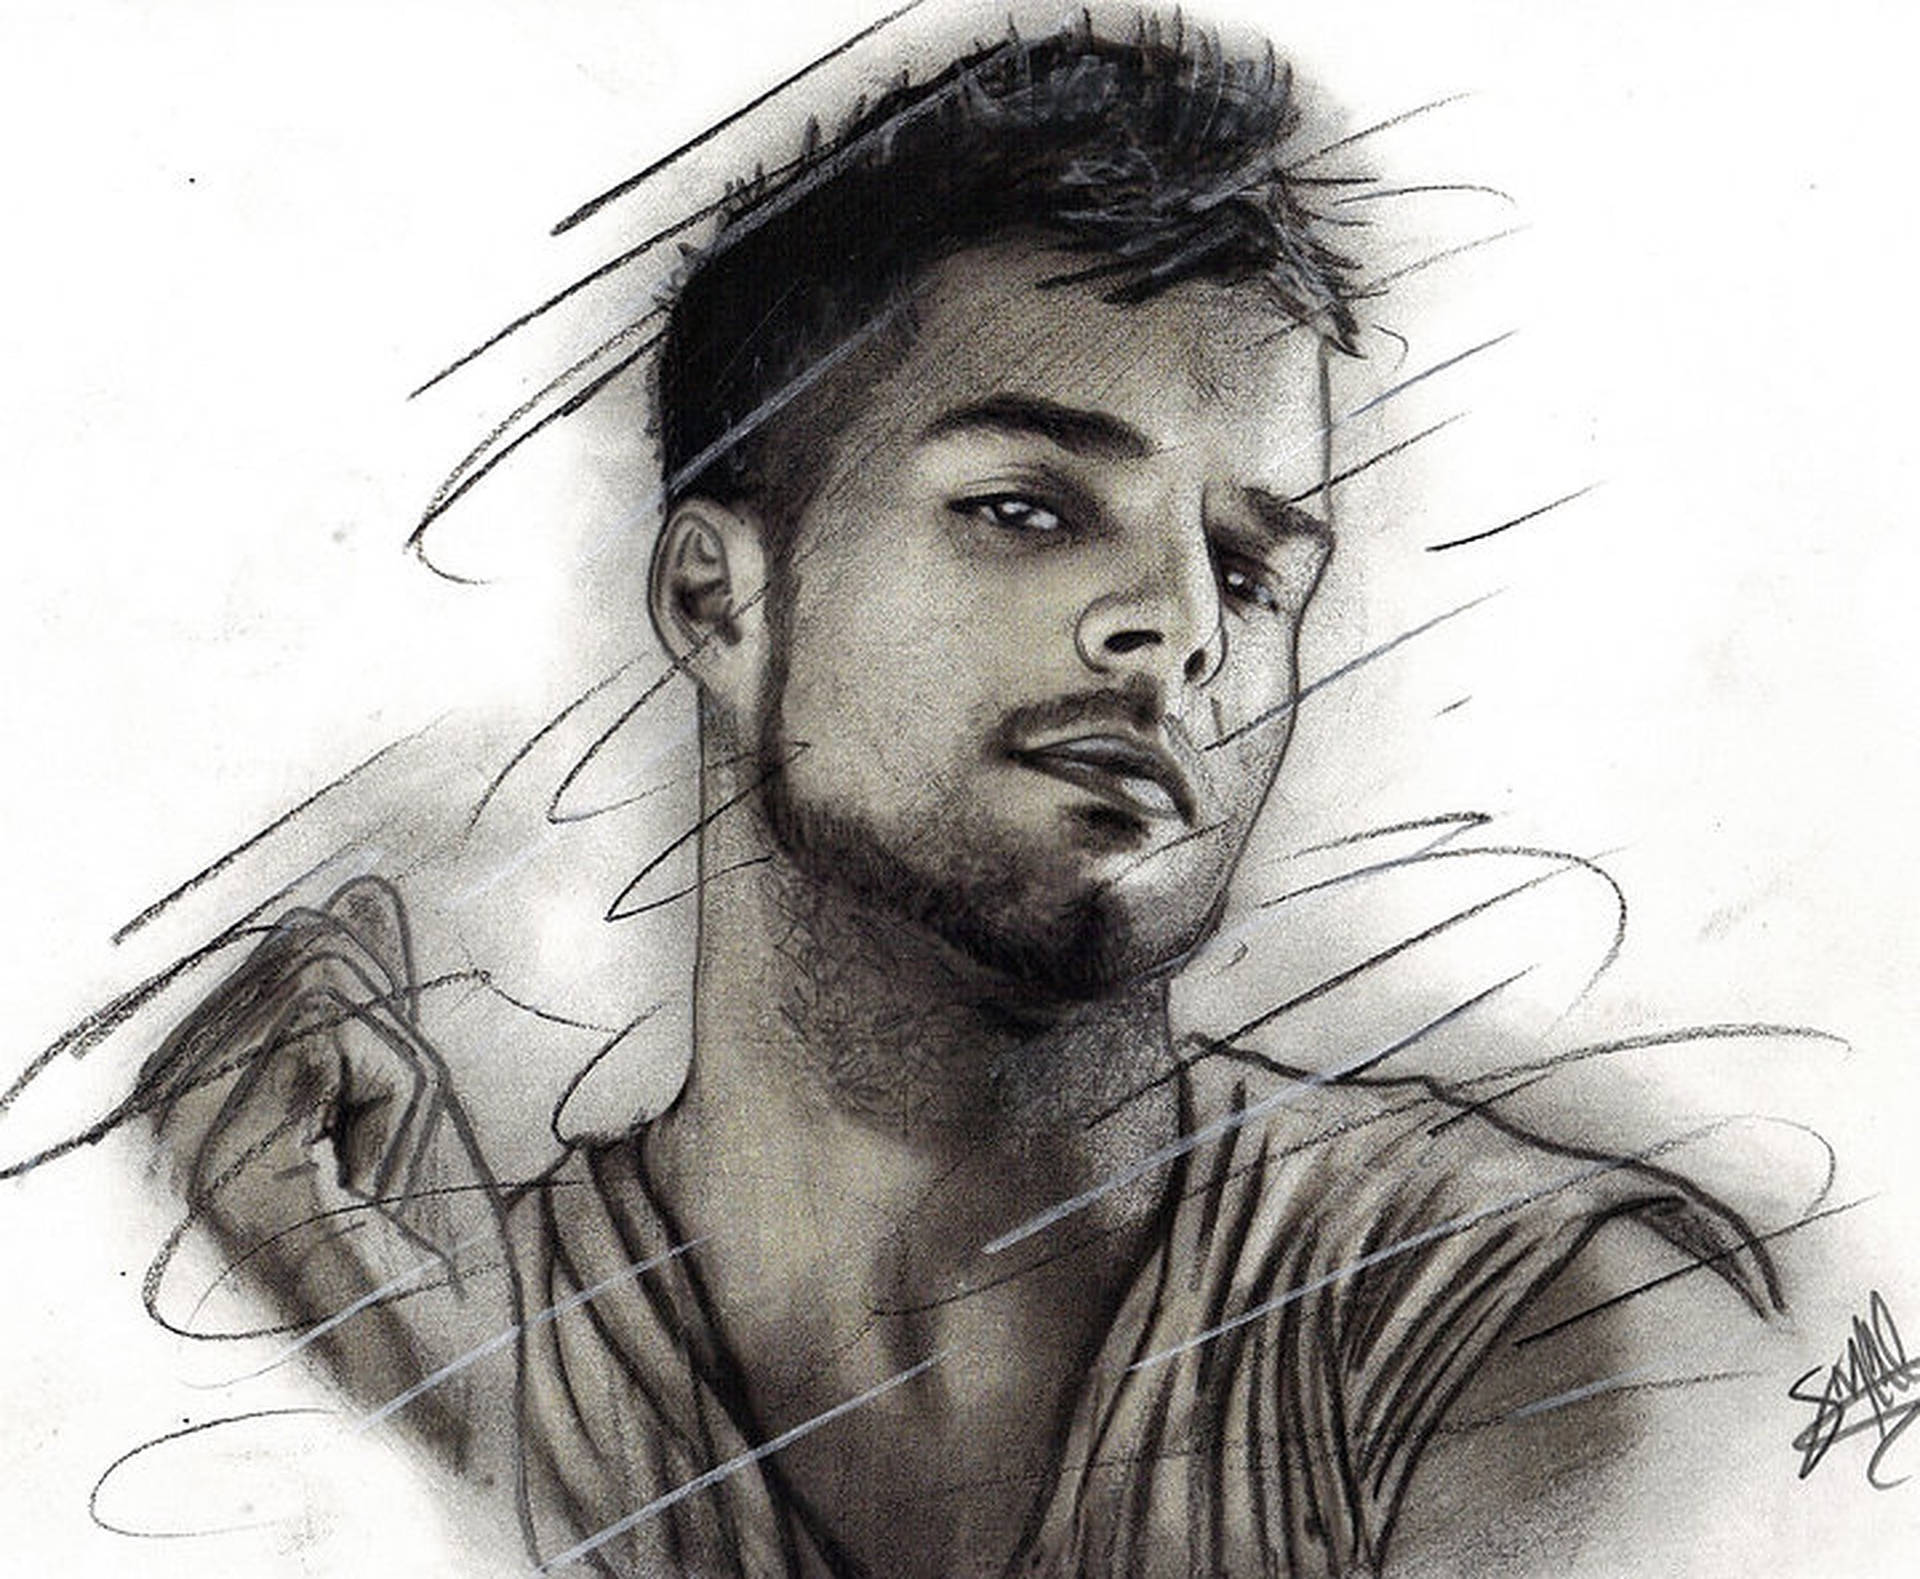 Ricky Martin Digital Art Sketch Wallpaper